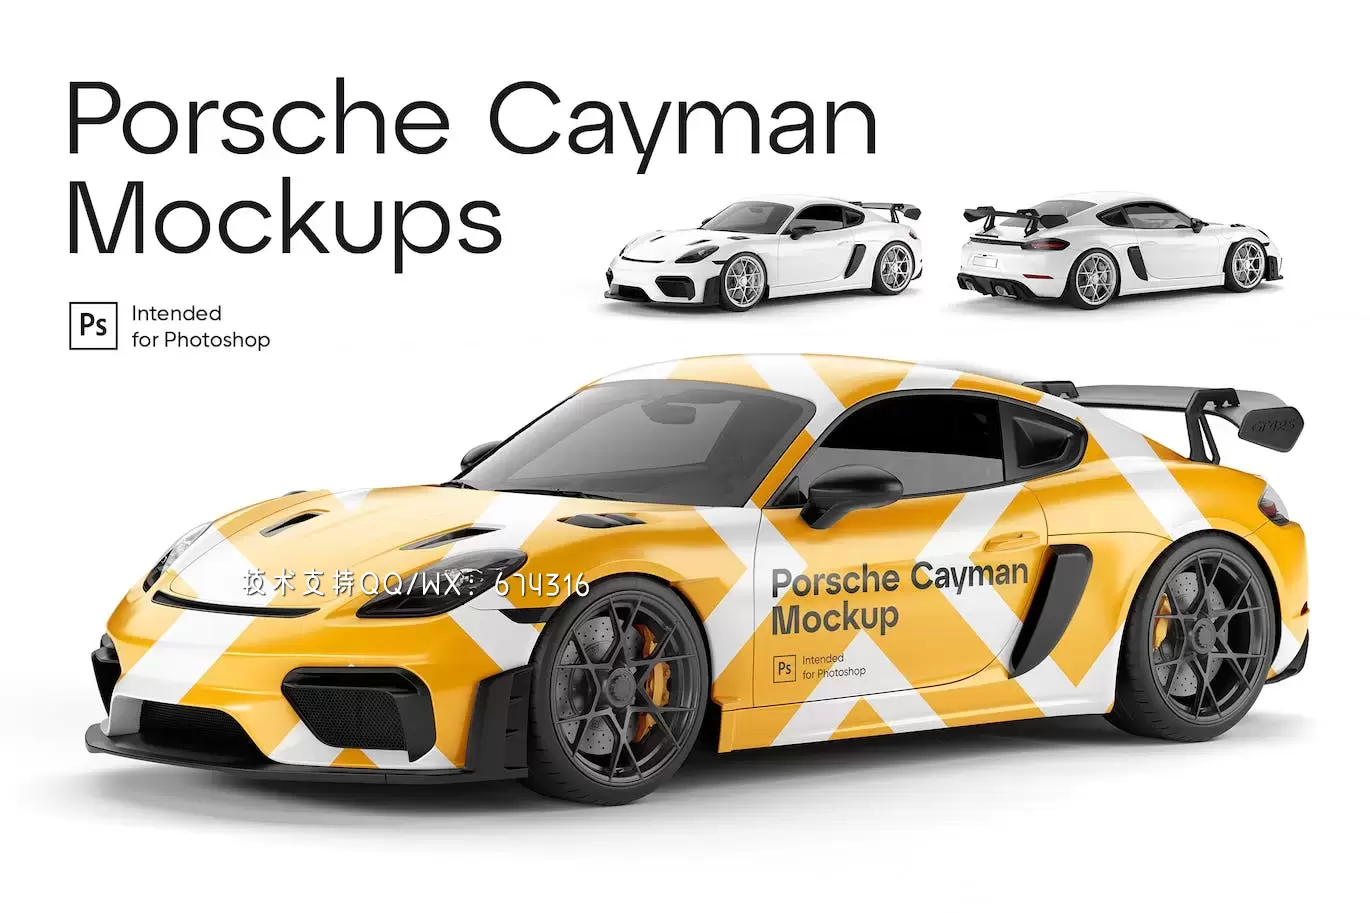 保时捷Cayman跑车车身广告设计样机 (PSD)免费下载